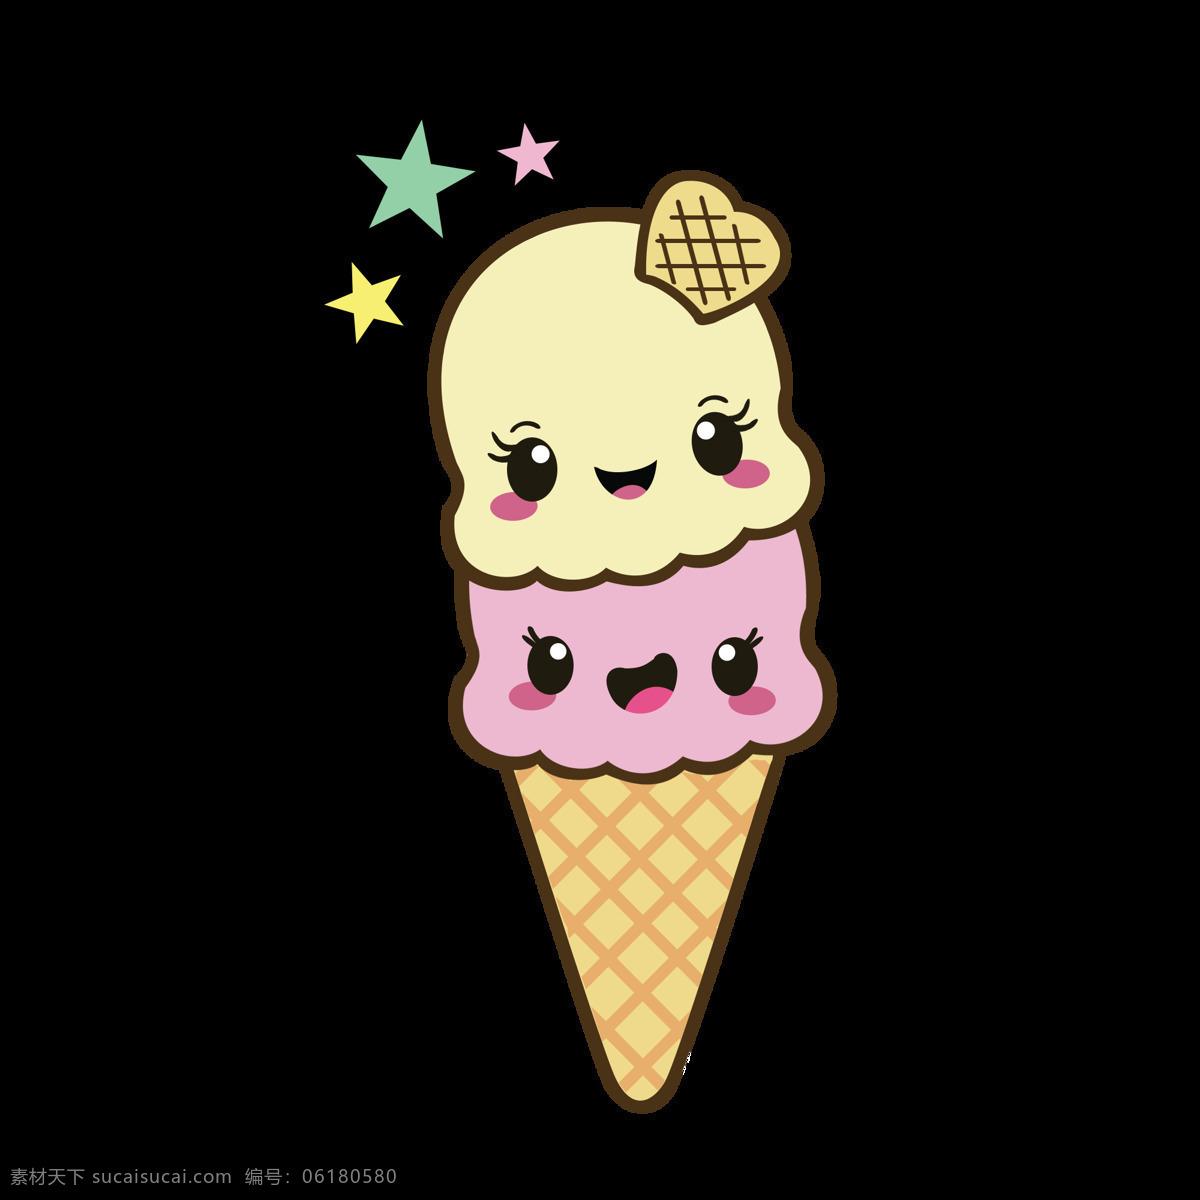 夏天 可爱 卡通 冰淇淋 元素 分层